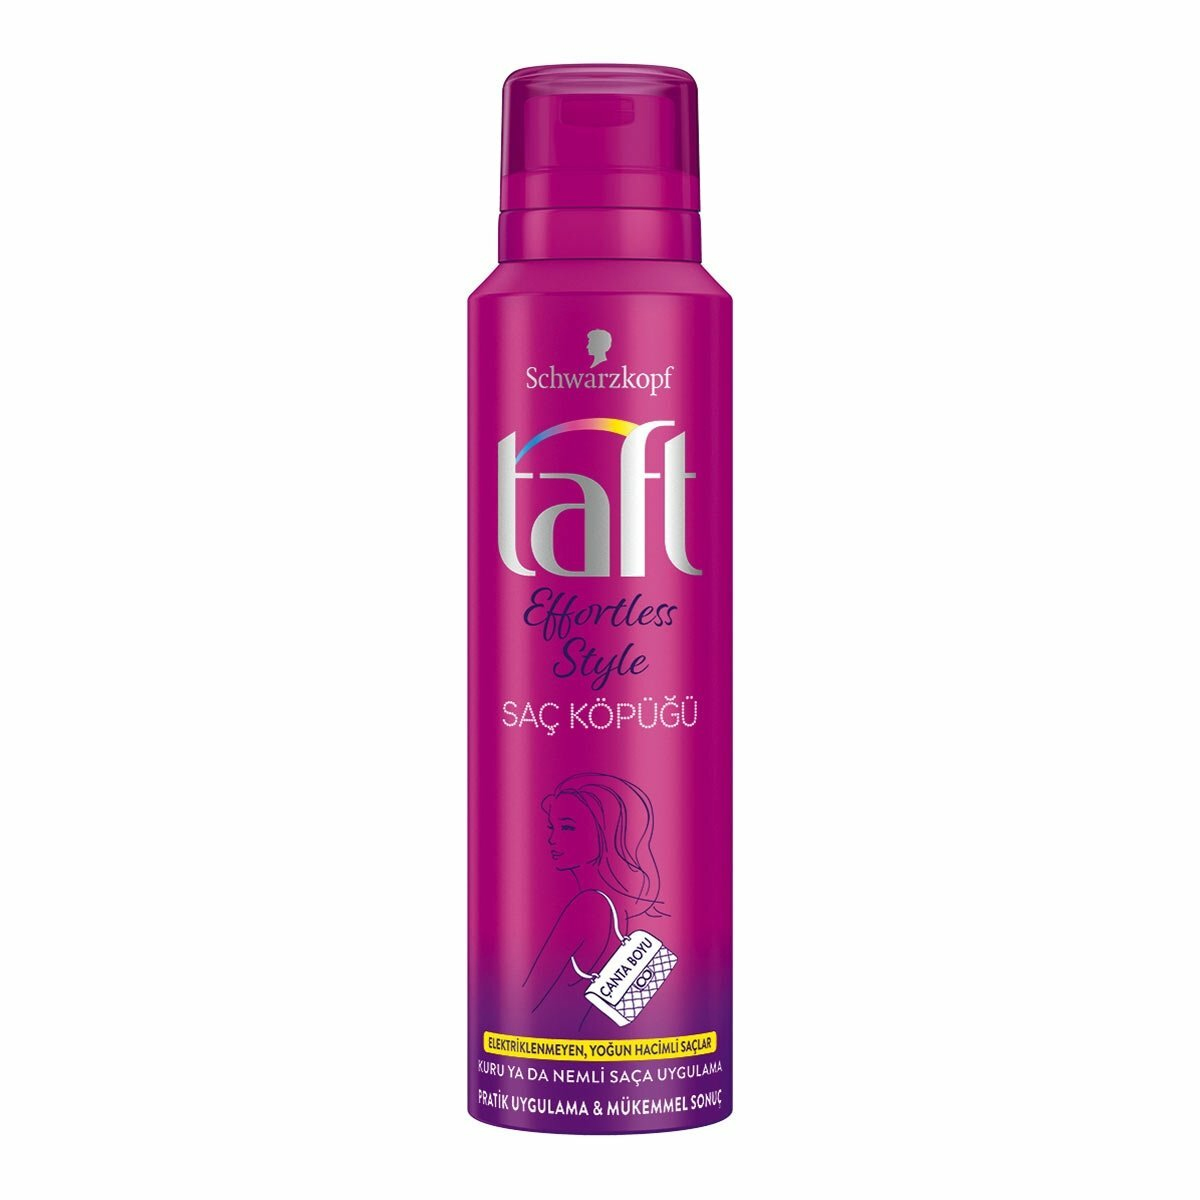 Taft Effortless Style Saç Köpüğü 150 ml